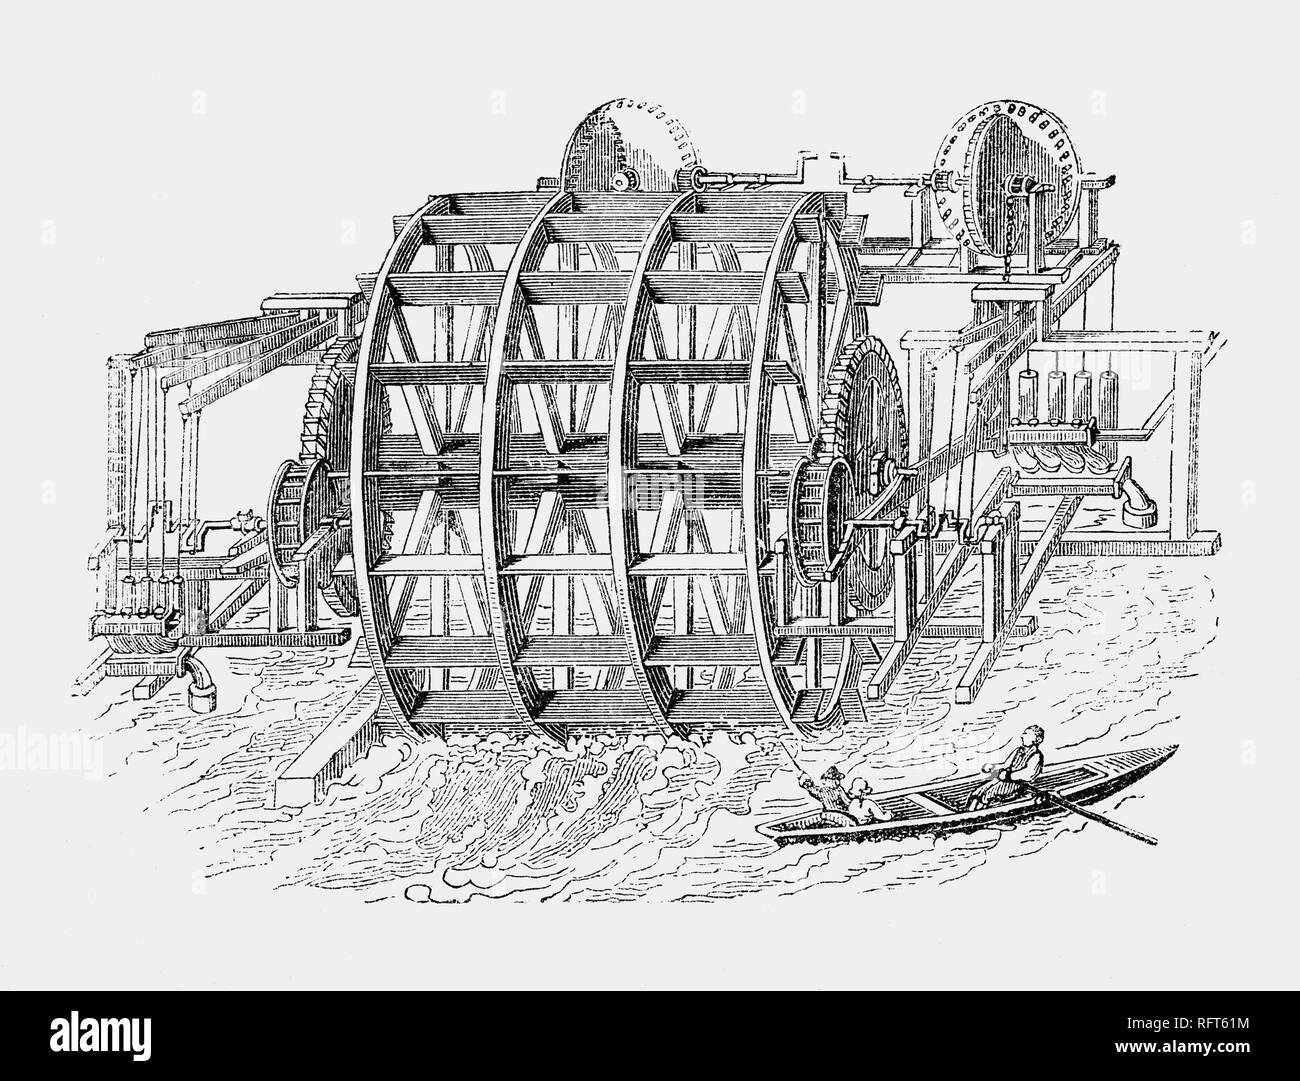 Am 24. Dezember 1582, der Holländer Pieter Maritz der London Bridge Wasserwerke beliefert frisches Wasser aus der Themse in privaten Häusern in der Stadt von London. Die eher wackelig aussehenden Apparat funktionierte gut, wurde aber in den großen Brand von 1666 zerstört. Von seinem Enkel continueing ersetzt, bis der Ausbau der Brücke im Jahr 1822 in Gebrauch. Das Wasserwerk wurde eine der größten Wasser Unternehmen in London, deren erste Wachstum war die Expansion der Stadt verknüpft, sondern im achtzehnten Jahrhundert beschränkt, da die Leitungen nicht der expandierenden Vororten erreichen konnte. Stockfoto